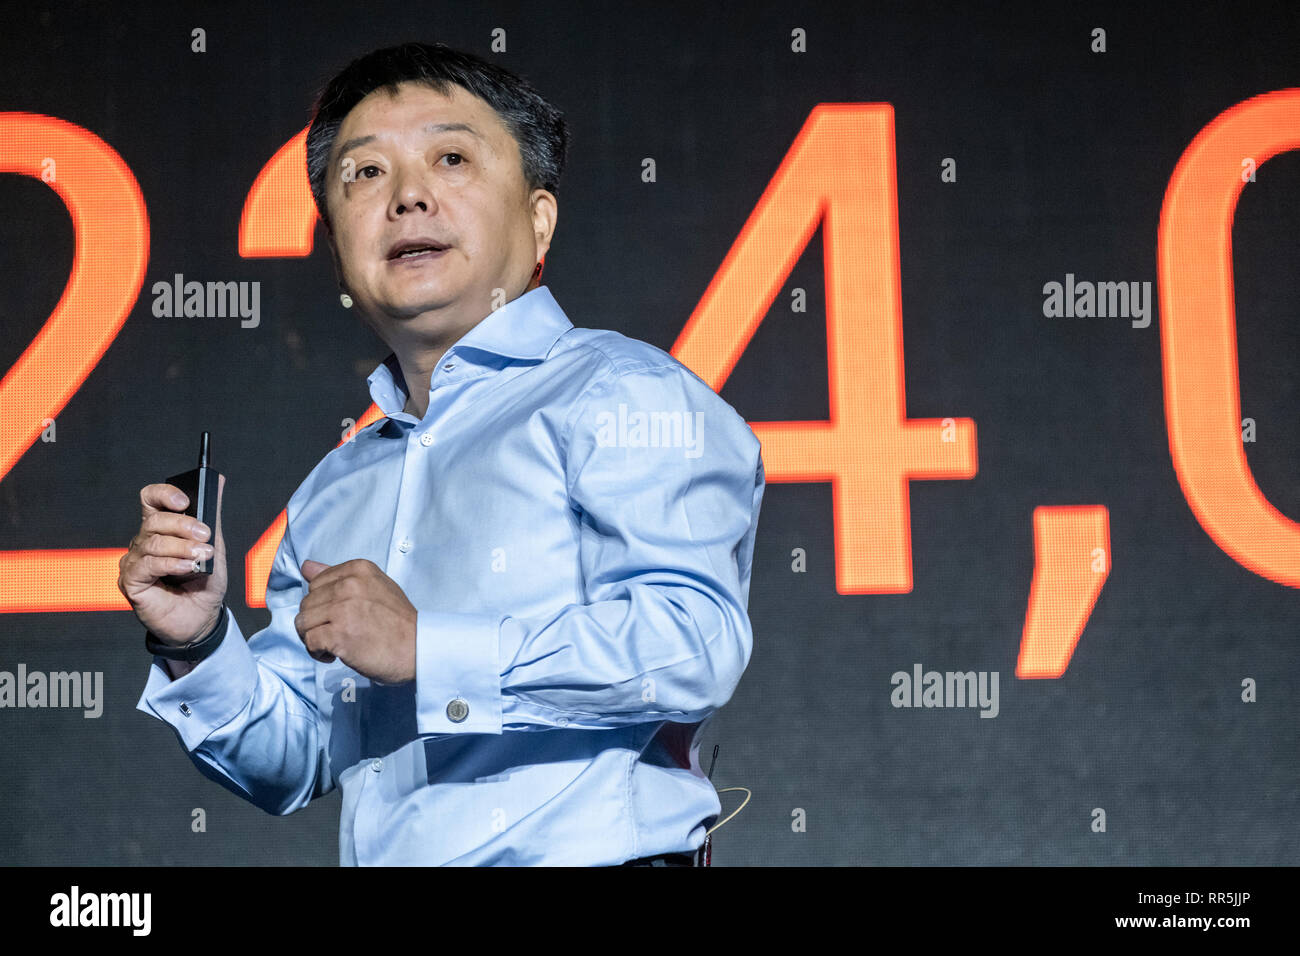 Xiang Wang, vice presidente senior di Xiaomi è visto parlare durante la sua presentazione. La società cinese Xiaomi dedicata alla produzione, sviluppo, design e vendite di telefoni smart ha presentato i nuovi prodotti per il 2019 al Mobile World Congress 2019. Foto Stock